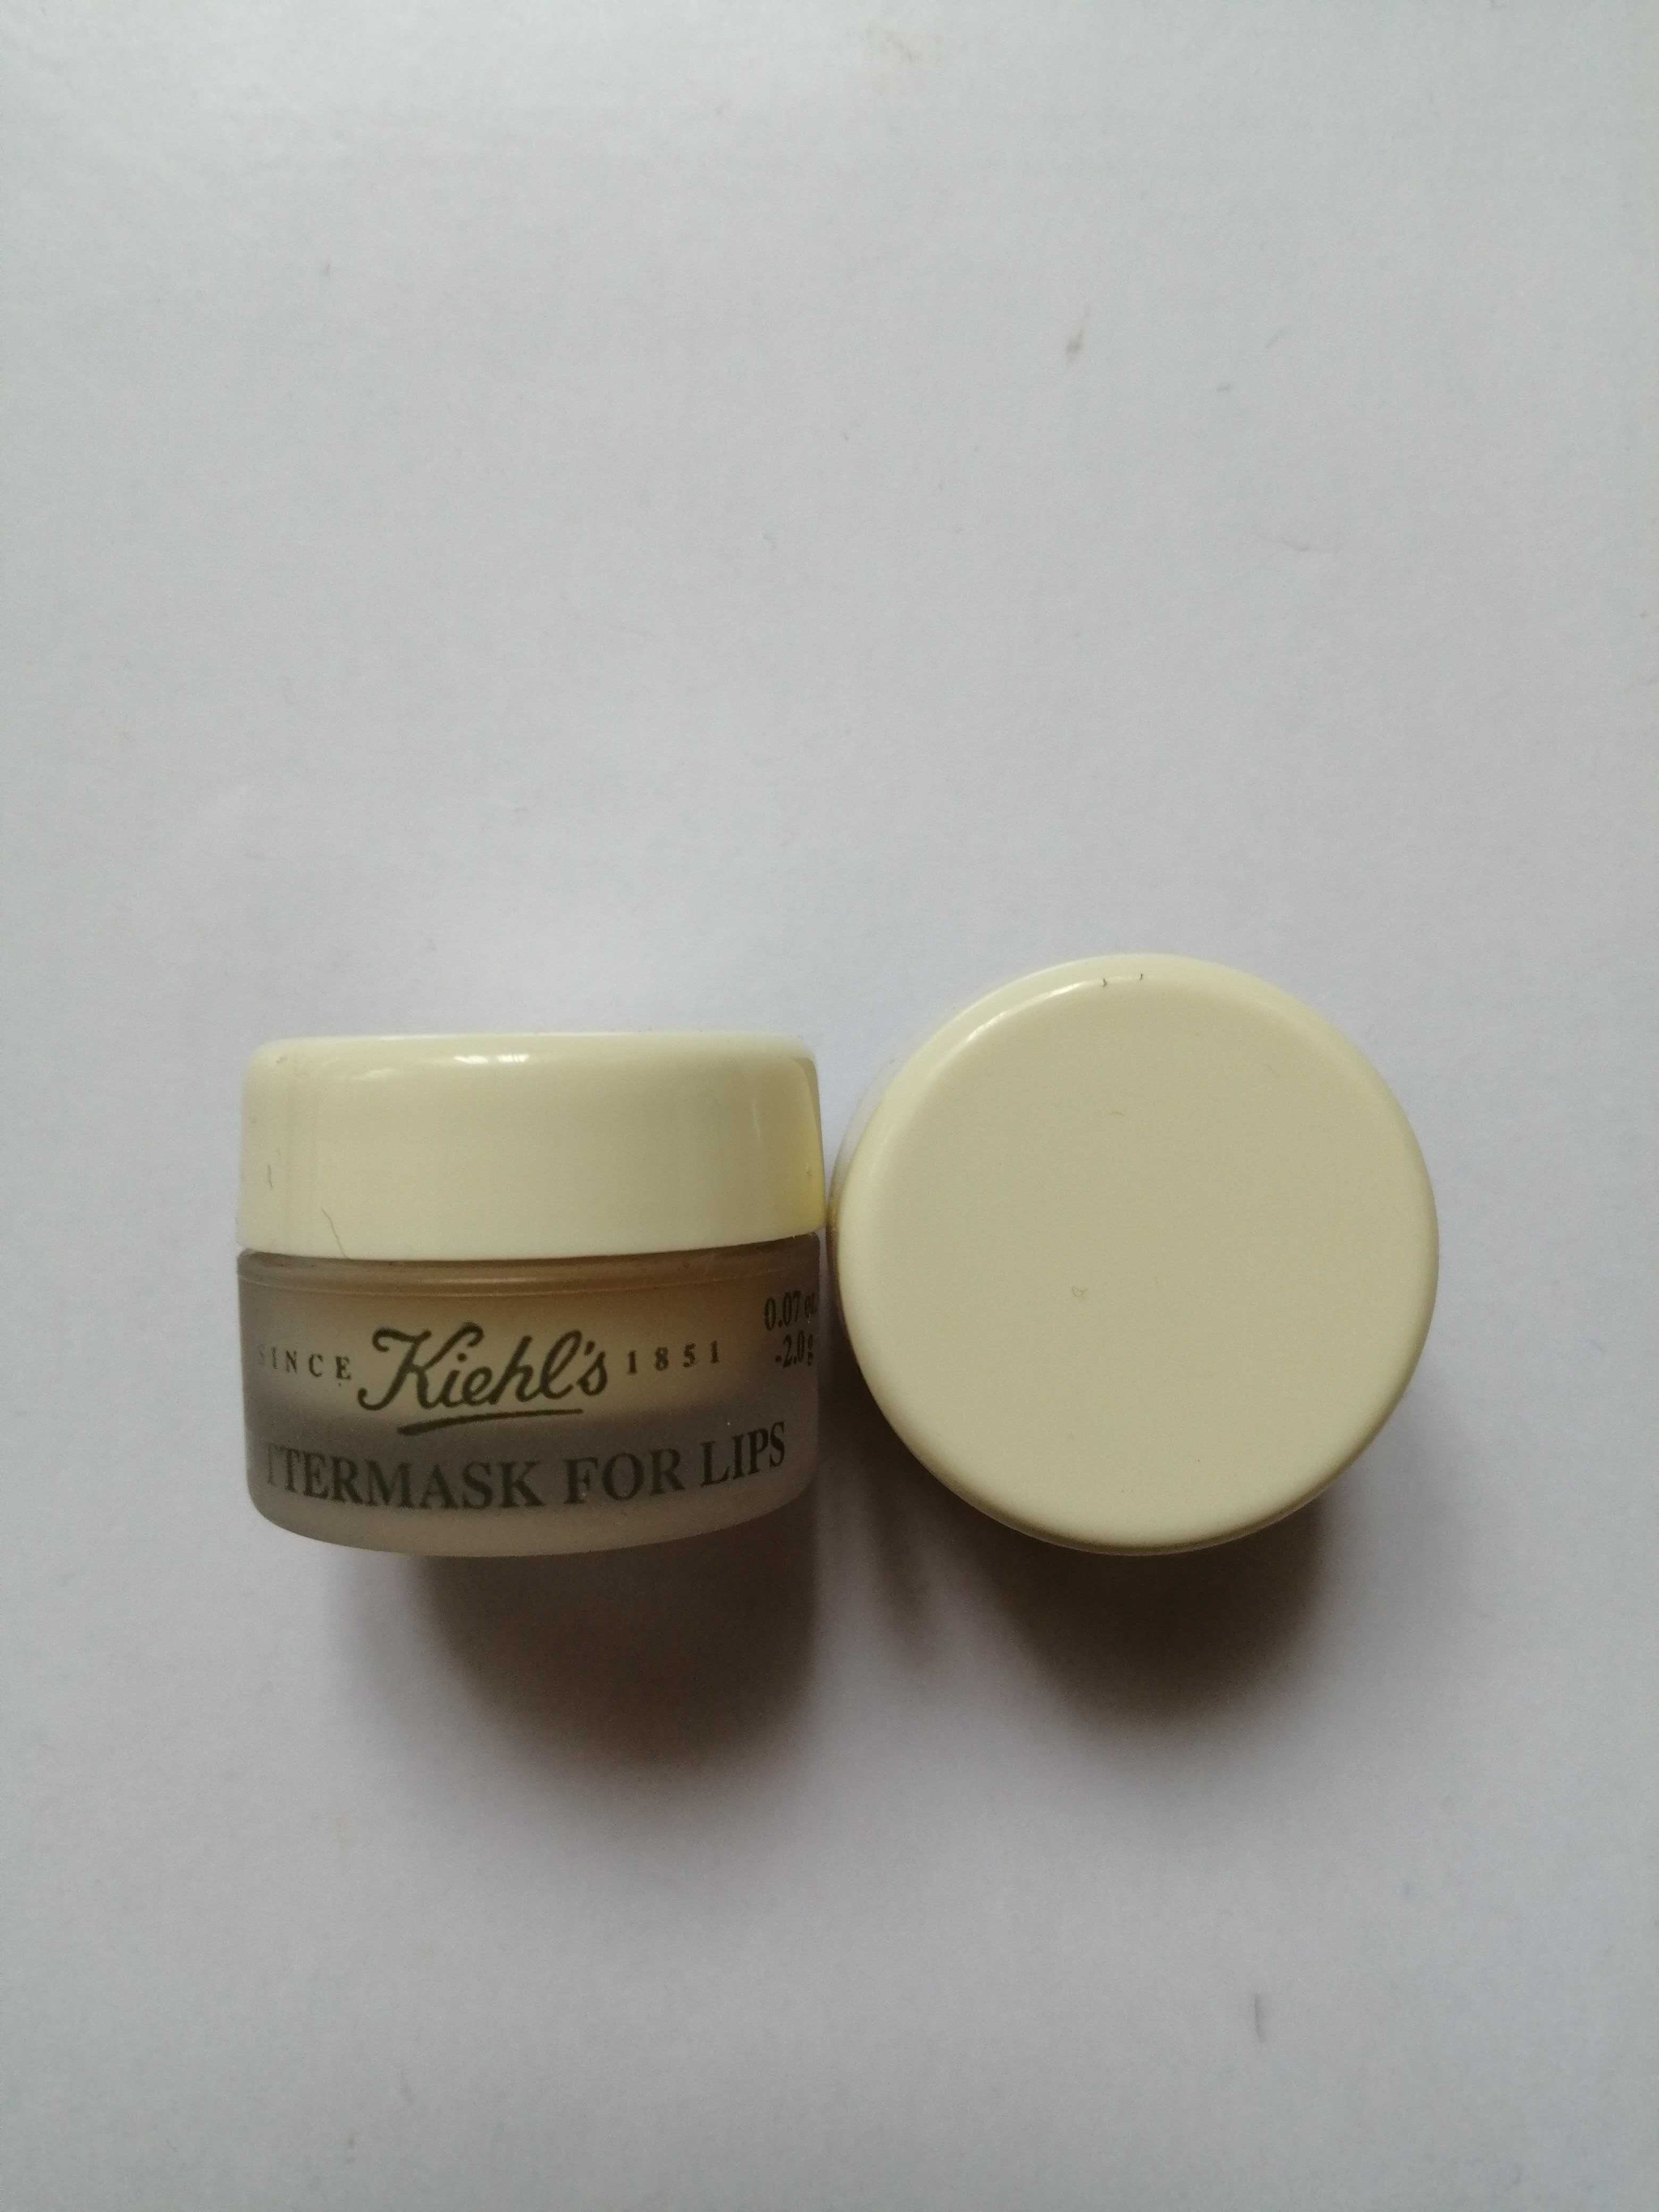 Kiehls buttermask for lips pojemność 2g -pielęgnacja do ust